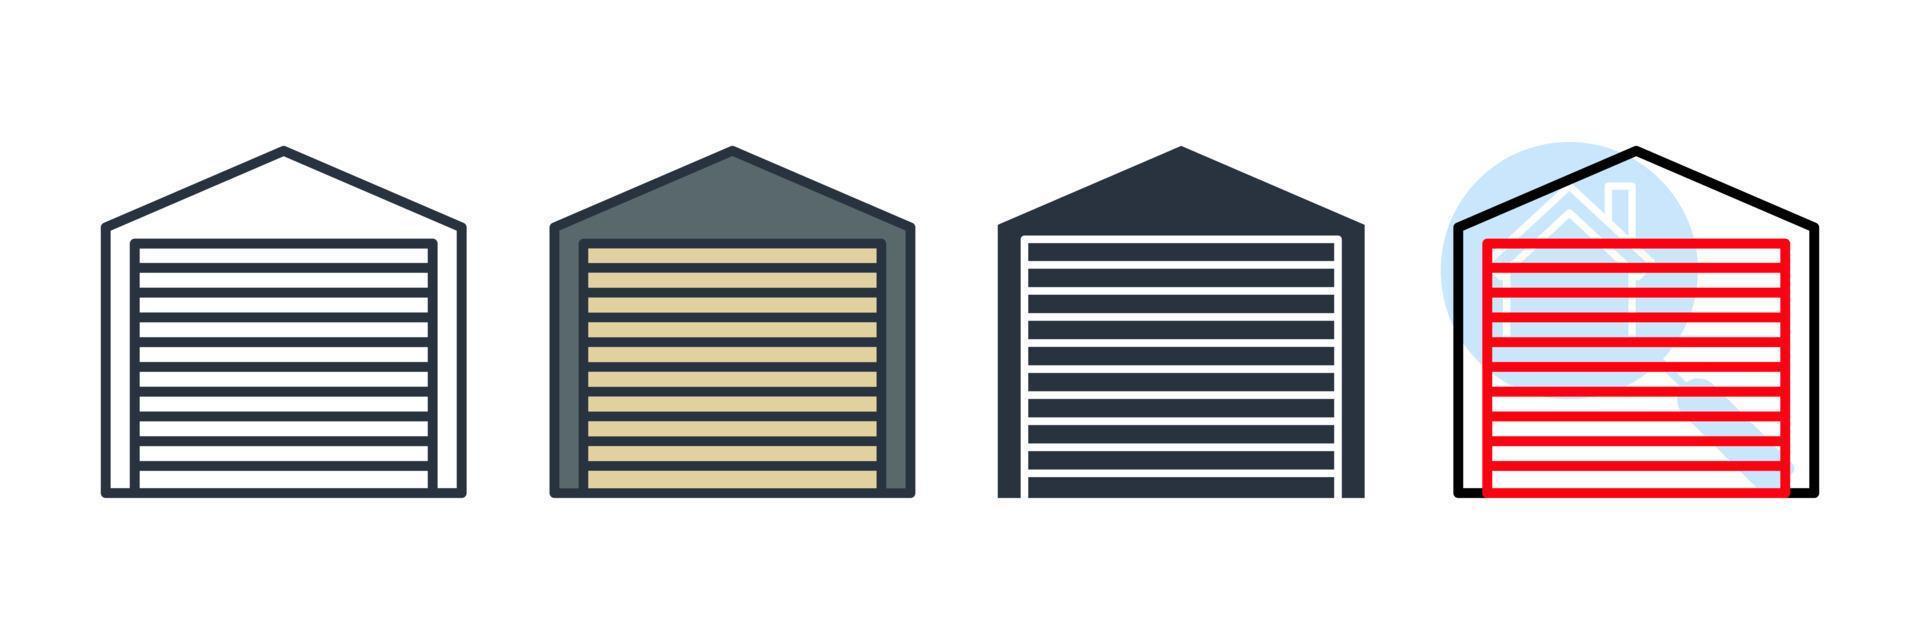 Garage-Symbol-Logo-Vektor-Illustration. Autoservice-Garage-Symbolvorlage für Grafik- und Webdesign-Sammlung vektor